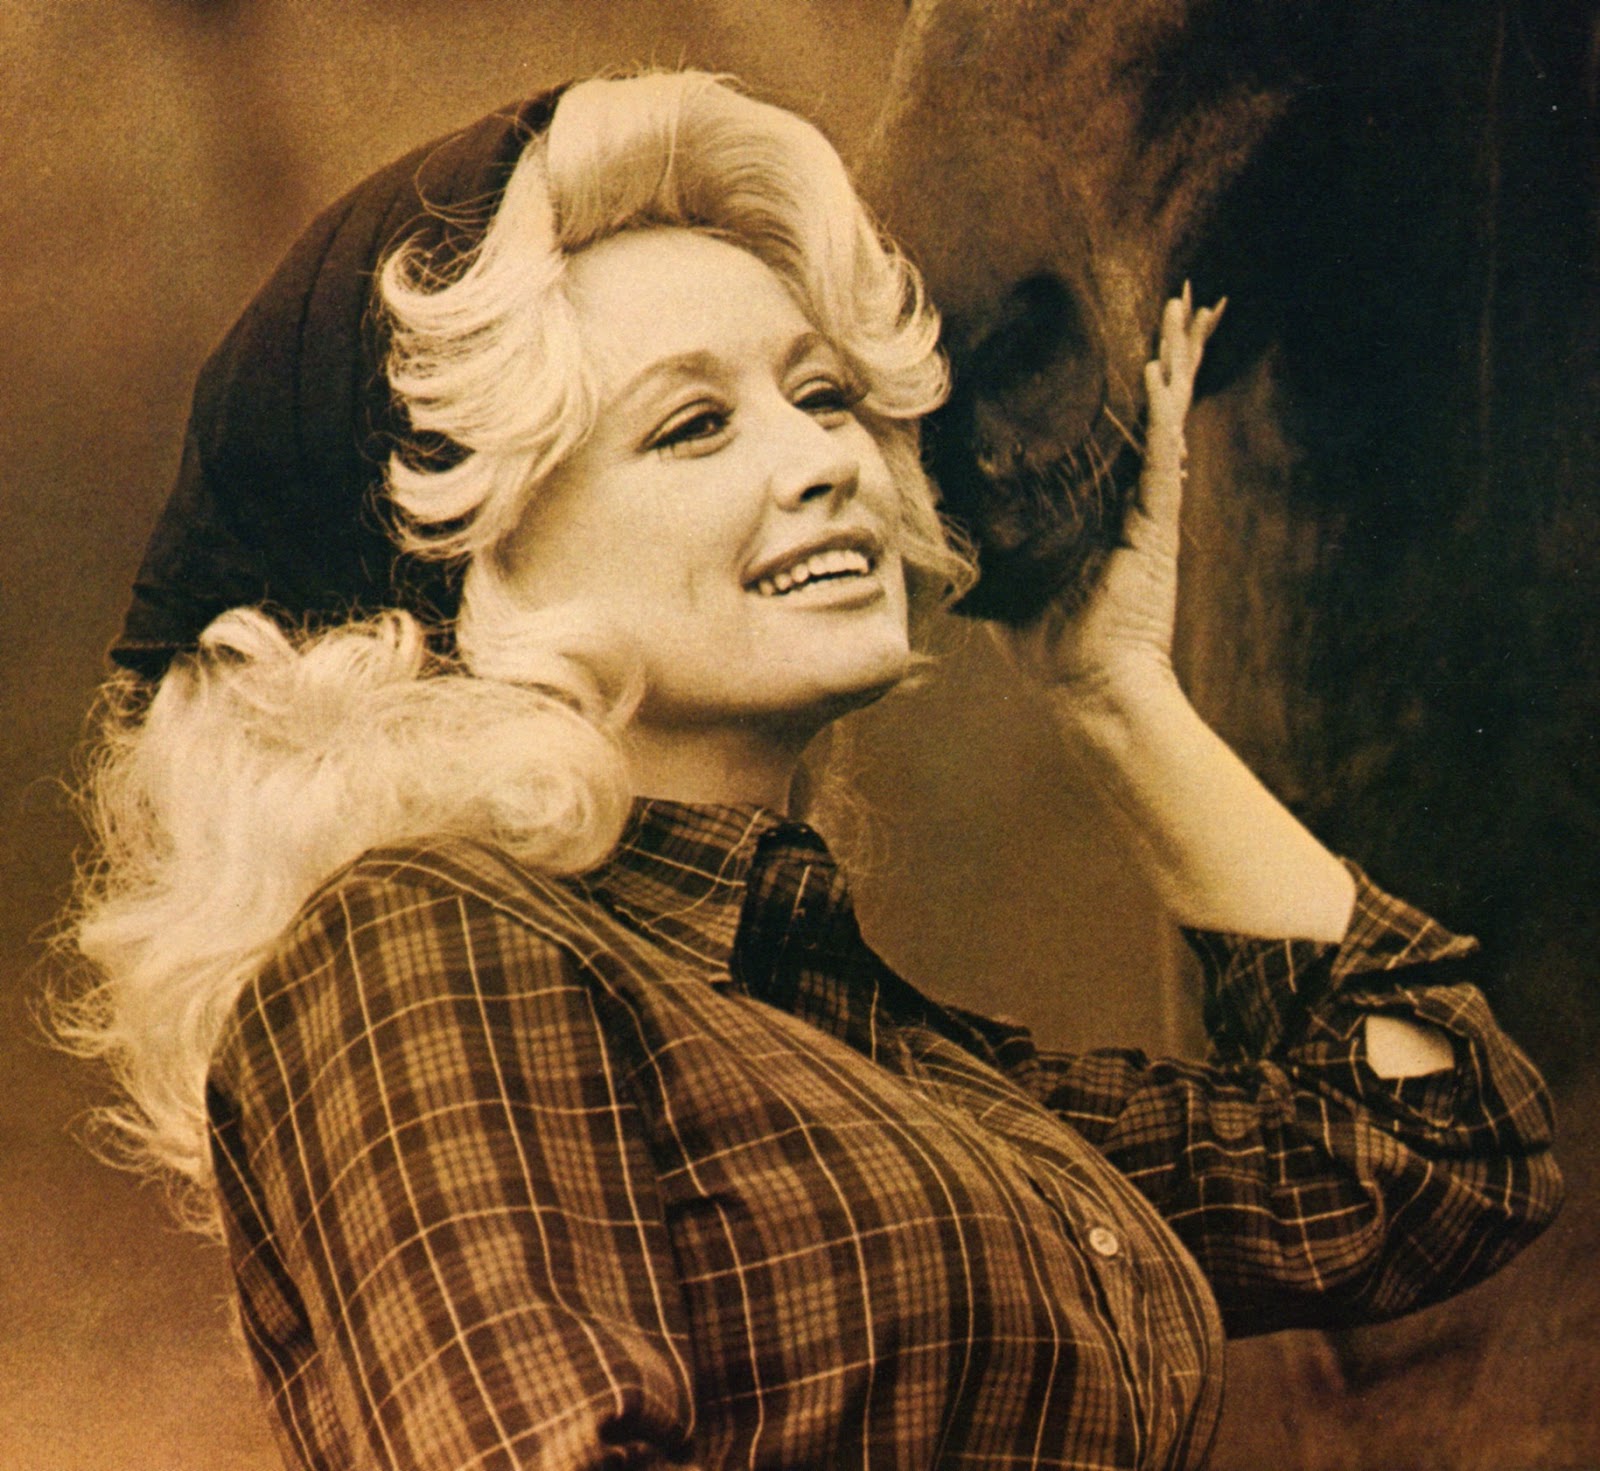 Dazzling Divas: Dolly Parton